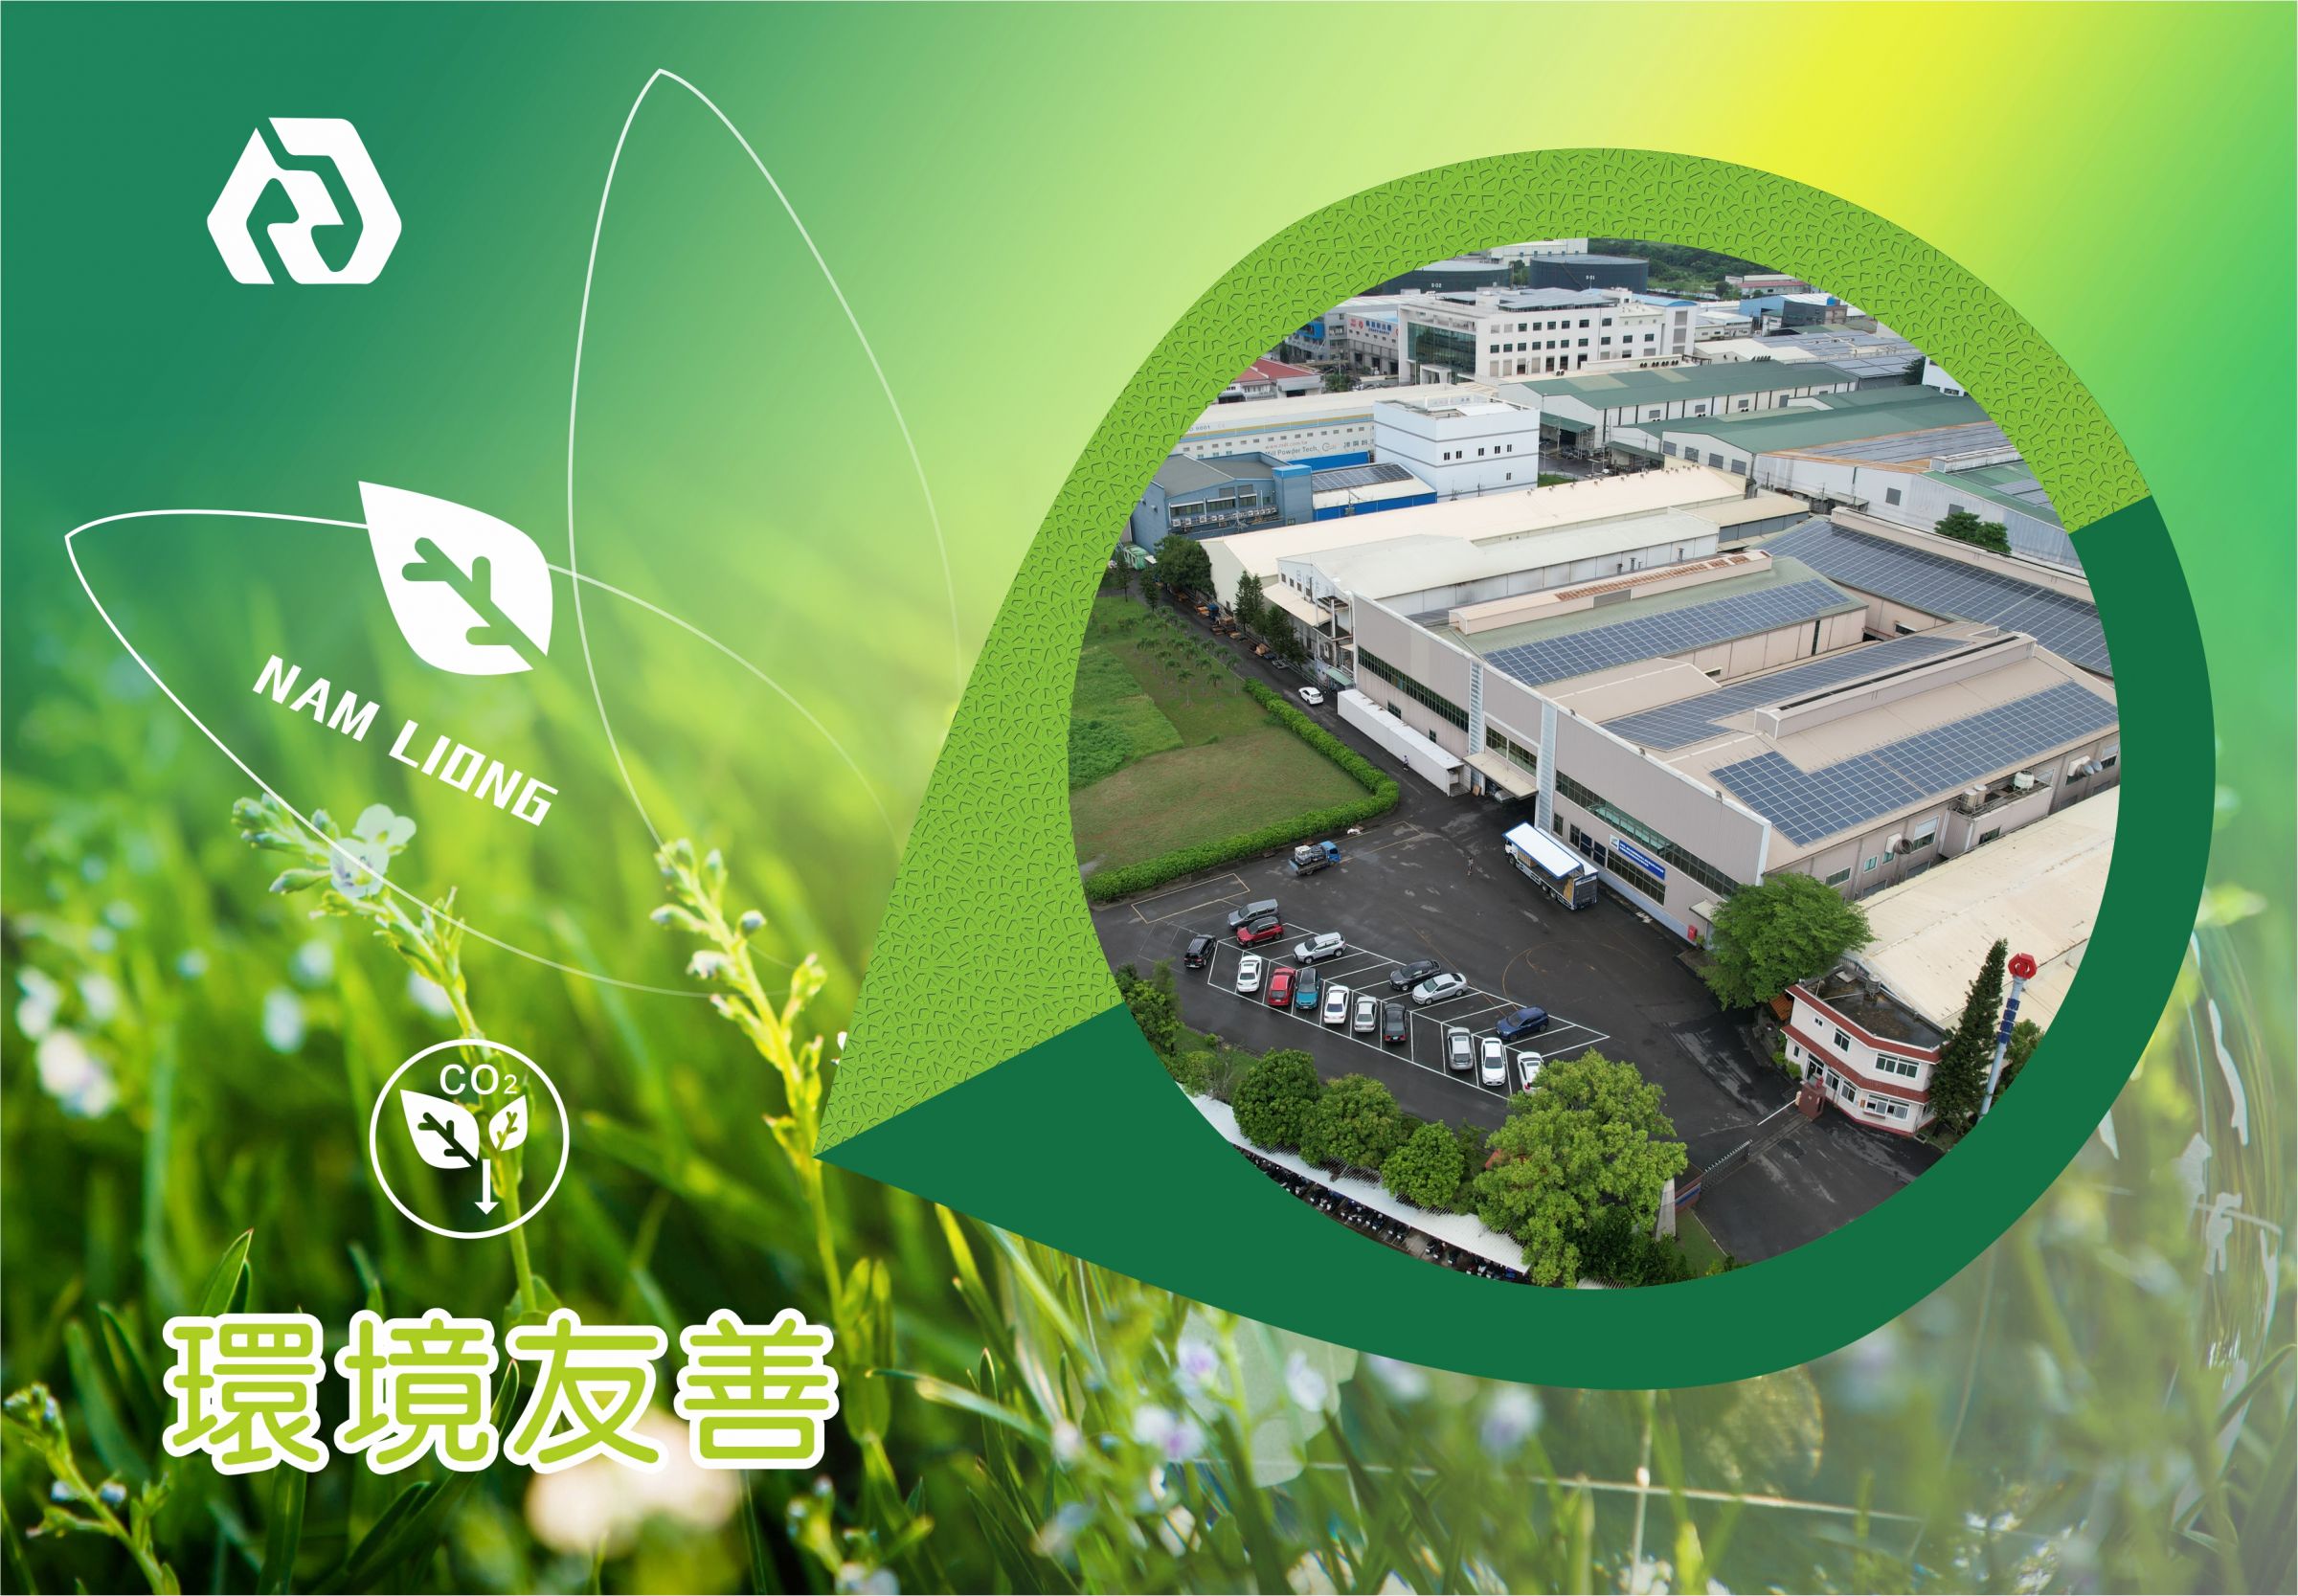 La protezione dell'ambiente e la sostenibilità di Nam Liong Global